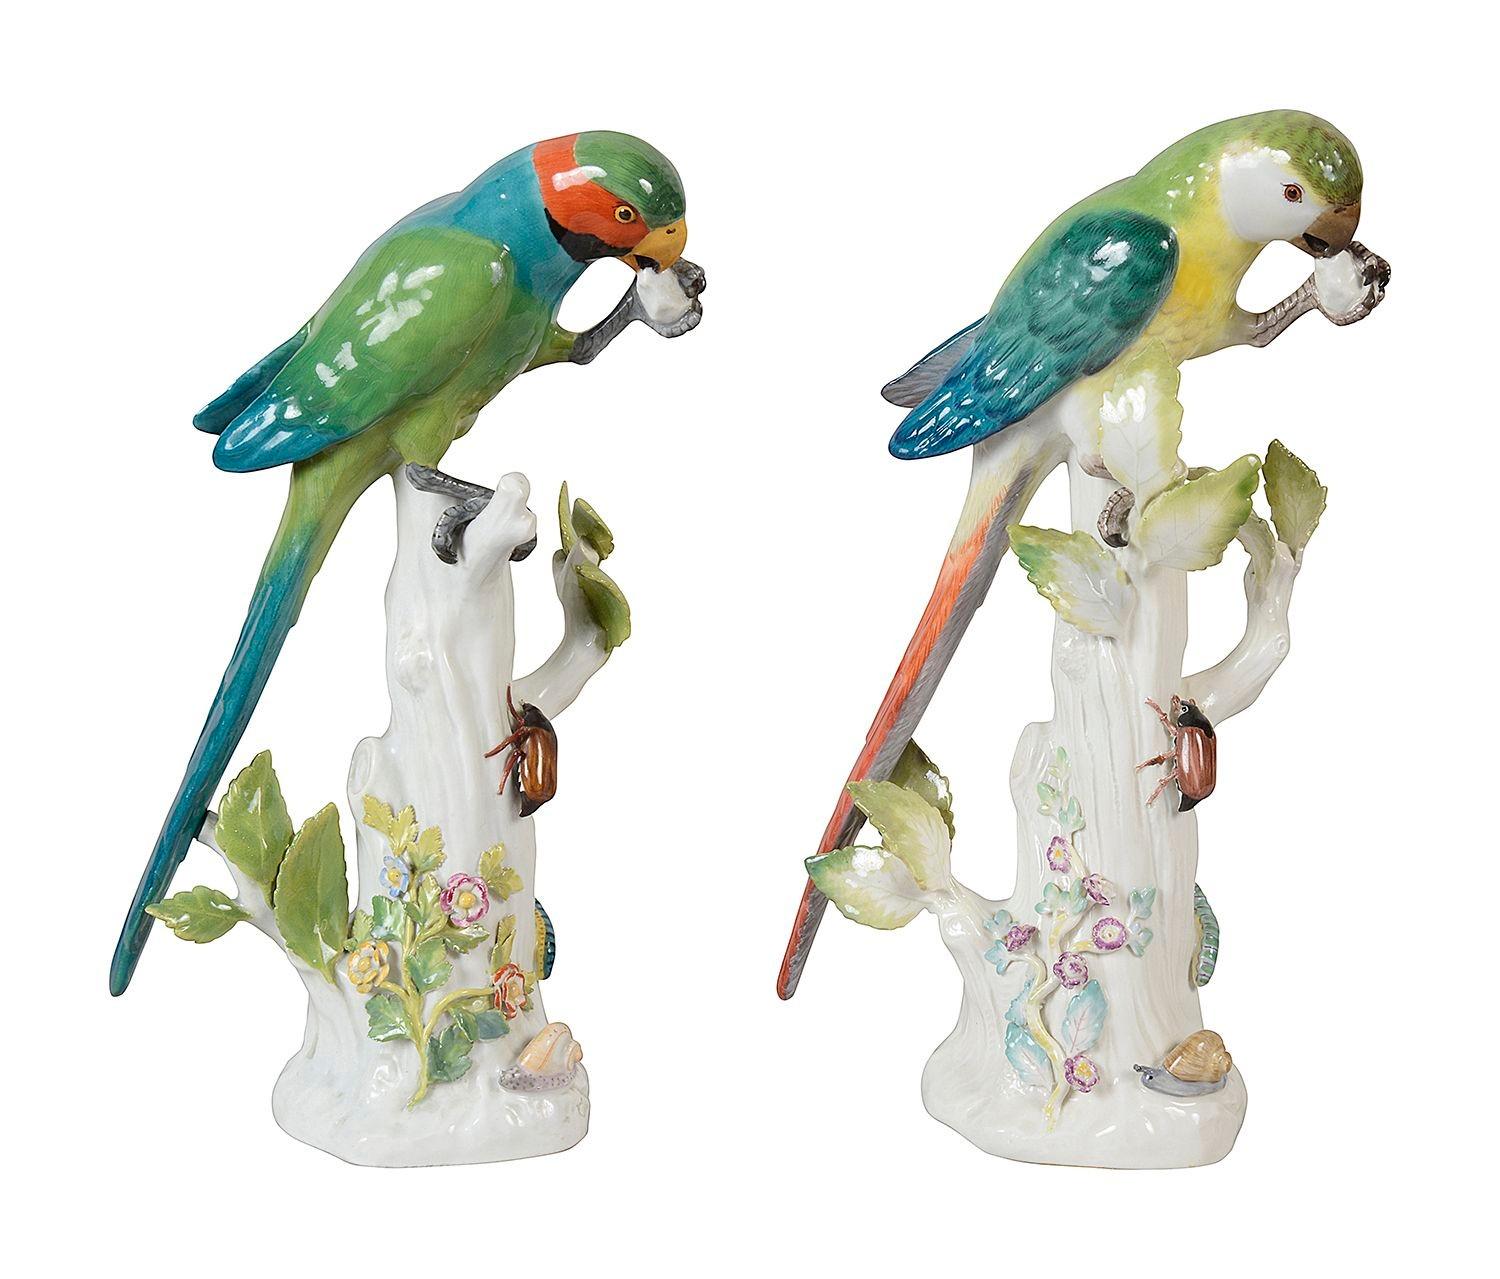 Une paire enchanteresse de perroquets en porcelaine de Meissen de la fin du XIXe siècle, perchés sur des troncs d'arbre en train de festoyer.
Les épées croisées bleues sont signées sur la base.


Lot 62747 DHKZ